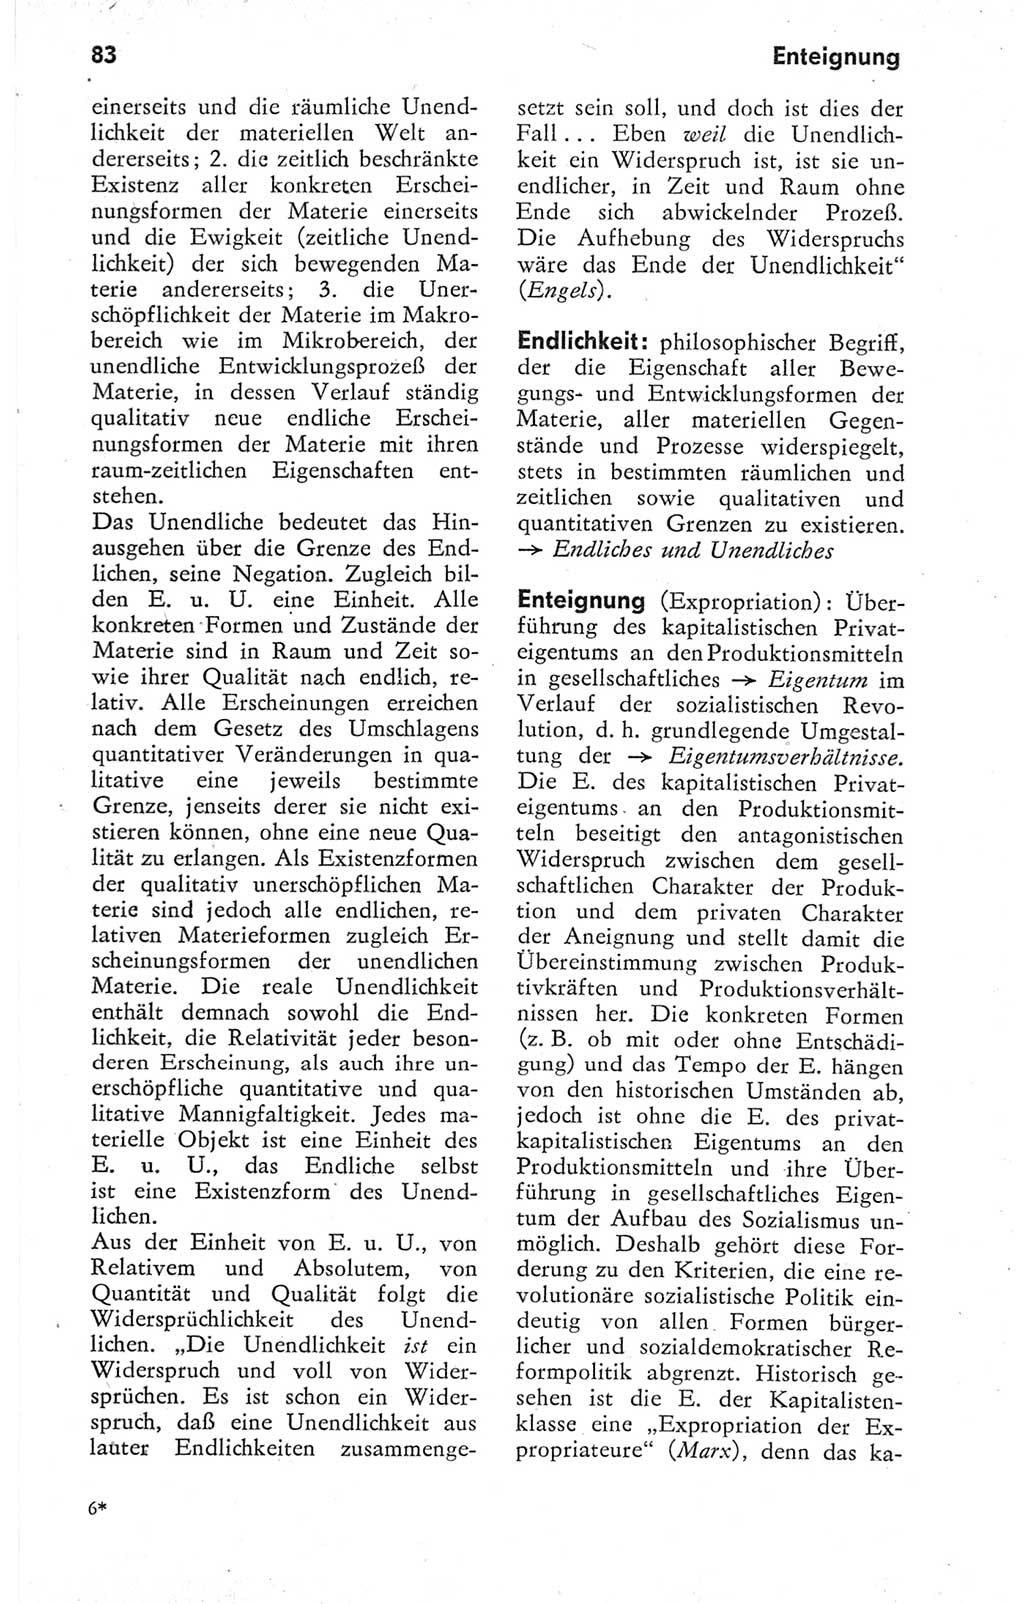 Kleines Wörterbuch der marxistisch-leninistischen Philosophie [Deutsche Demokratische Republik (DDR)] 1974, Seite 83 (Kl. Wb. ML Phil. DDR 1974, S. 83)